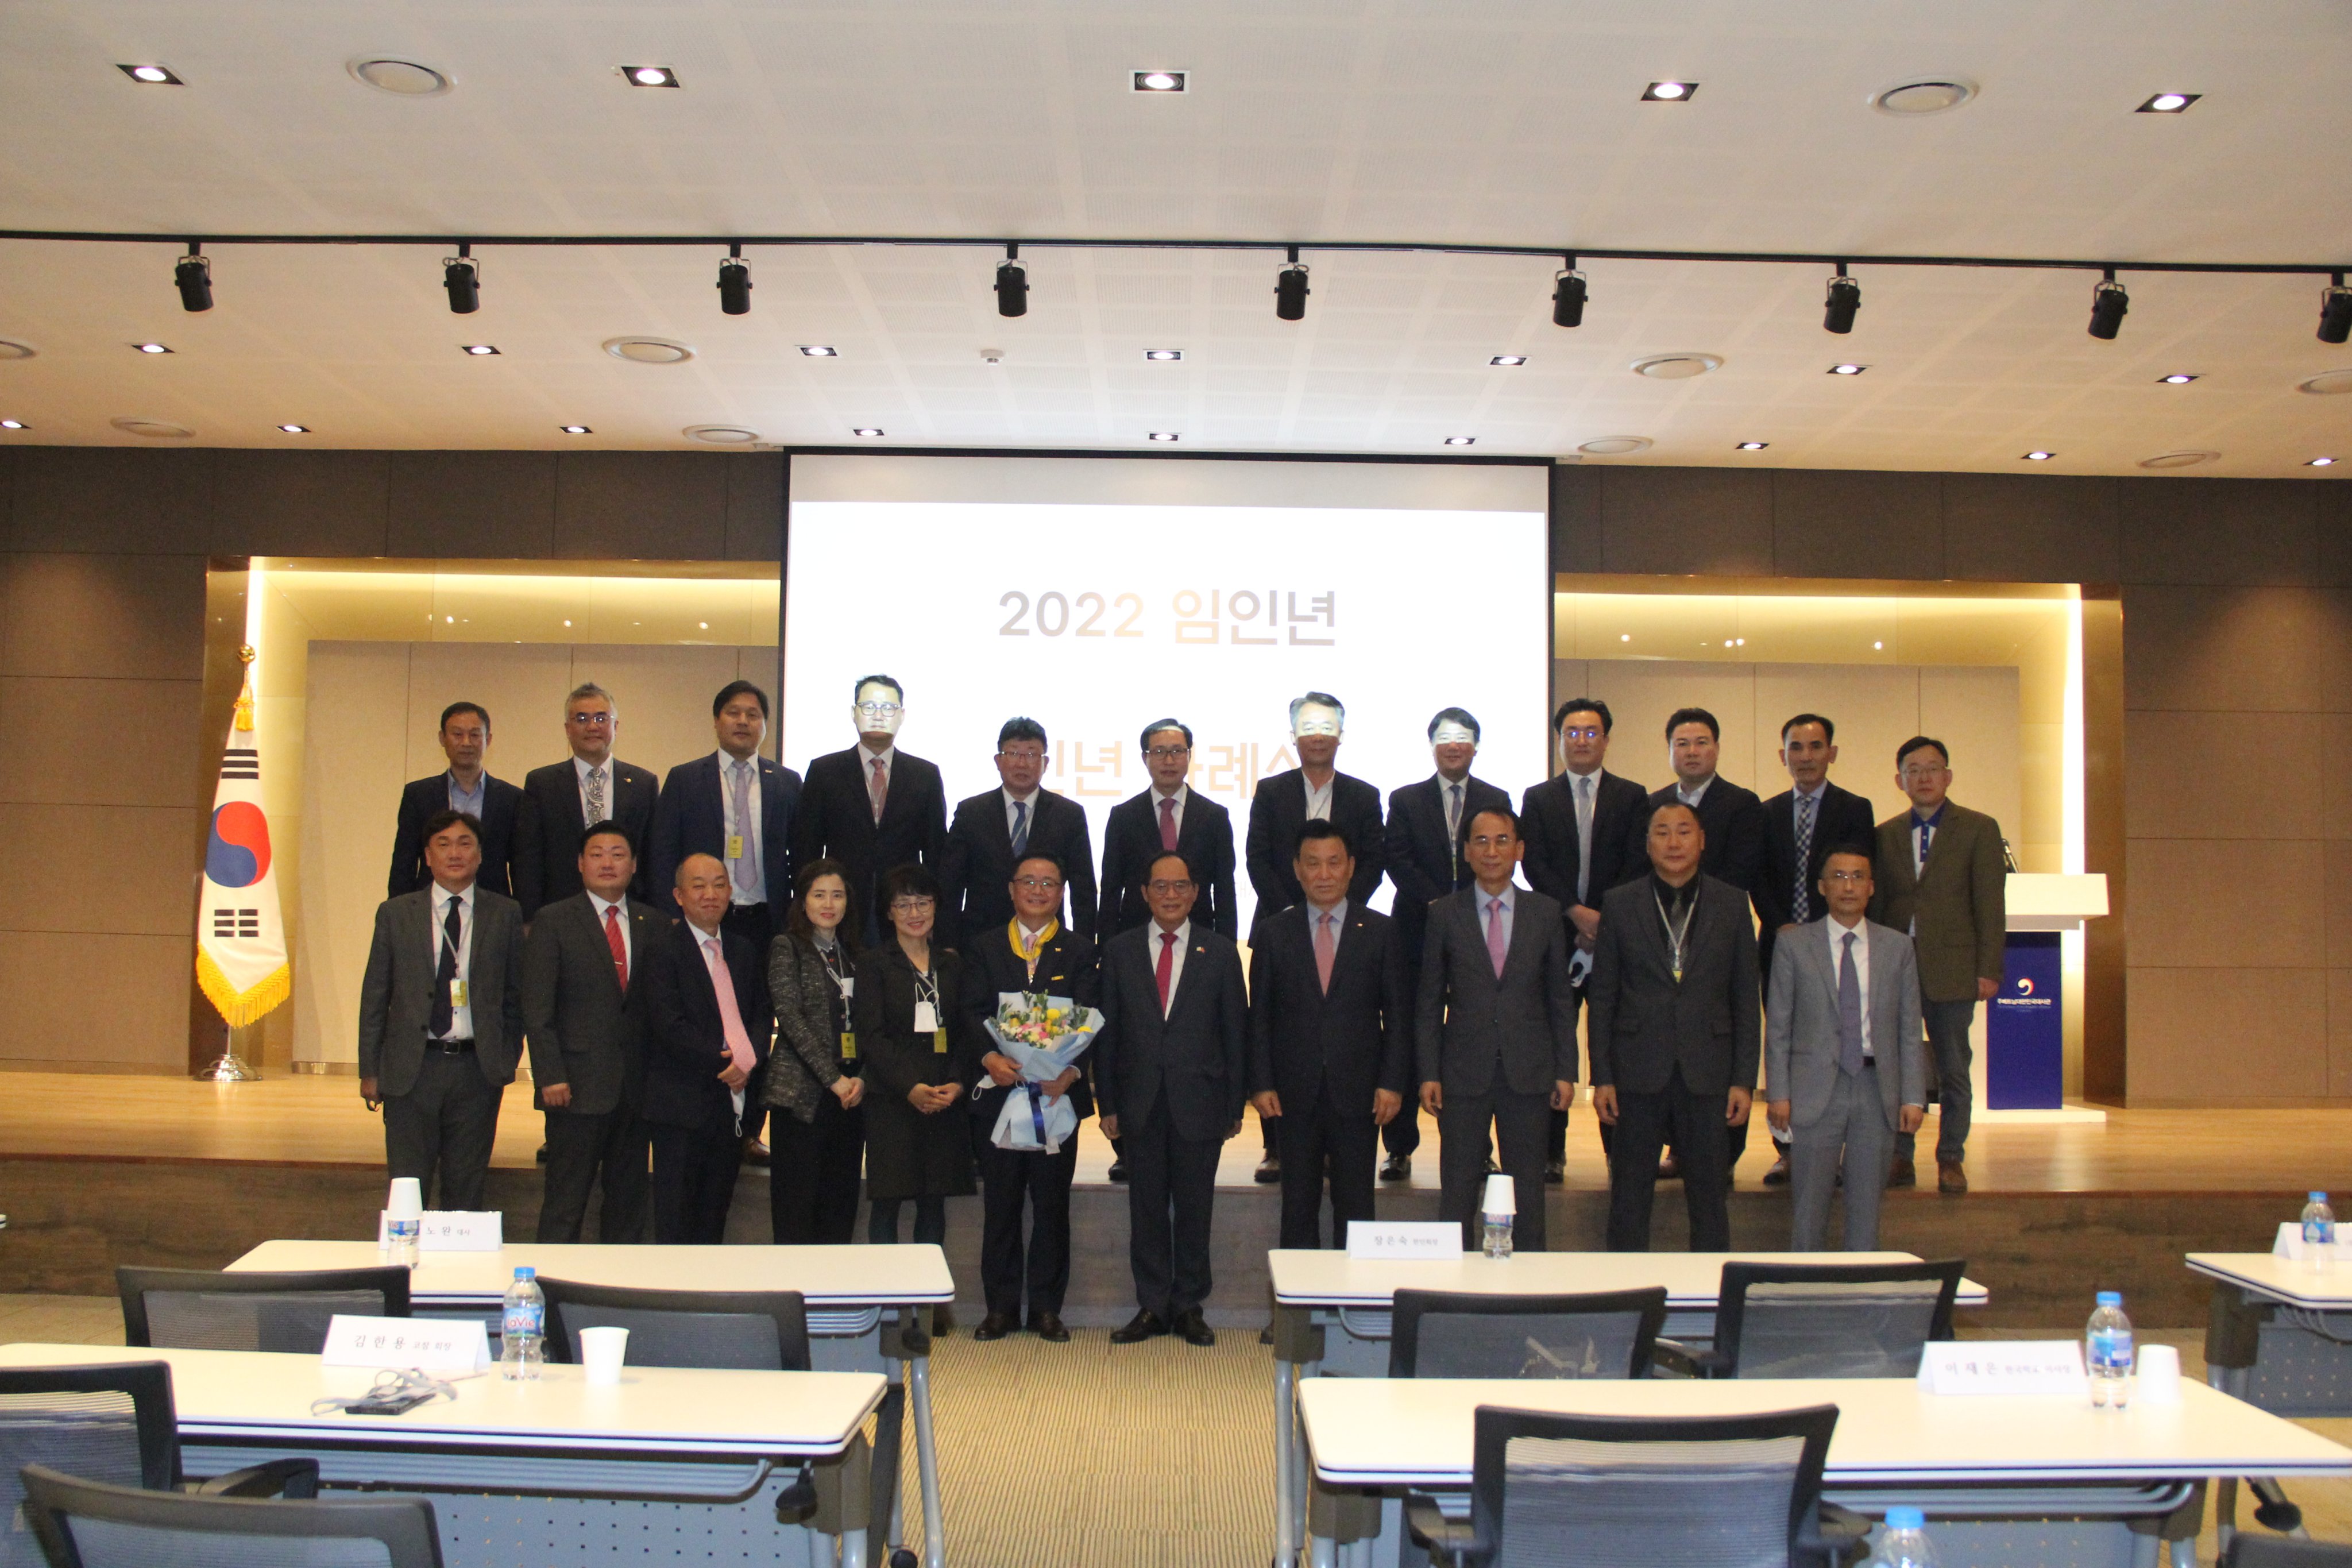 Lễ trao tặng Huân chương quốc gia Hàn Quốc Dongbaek Medal cho Ông Yoon Sang Ho, CEO công ty TNHH SMBL